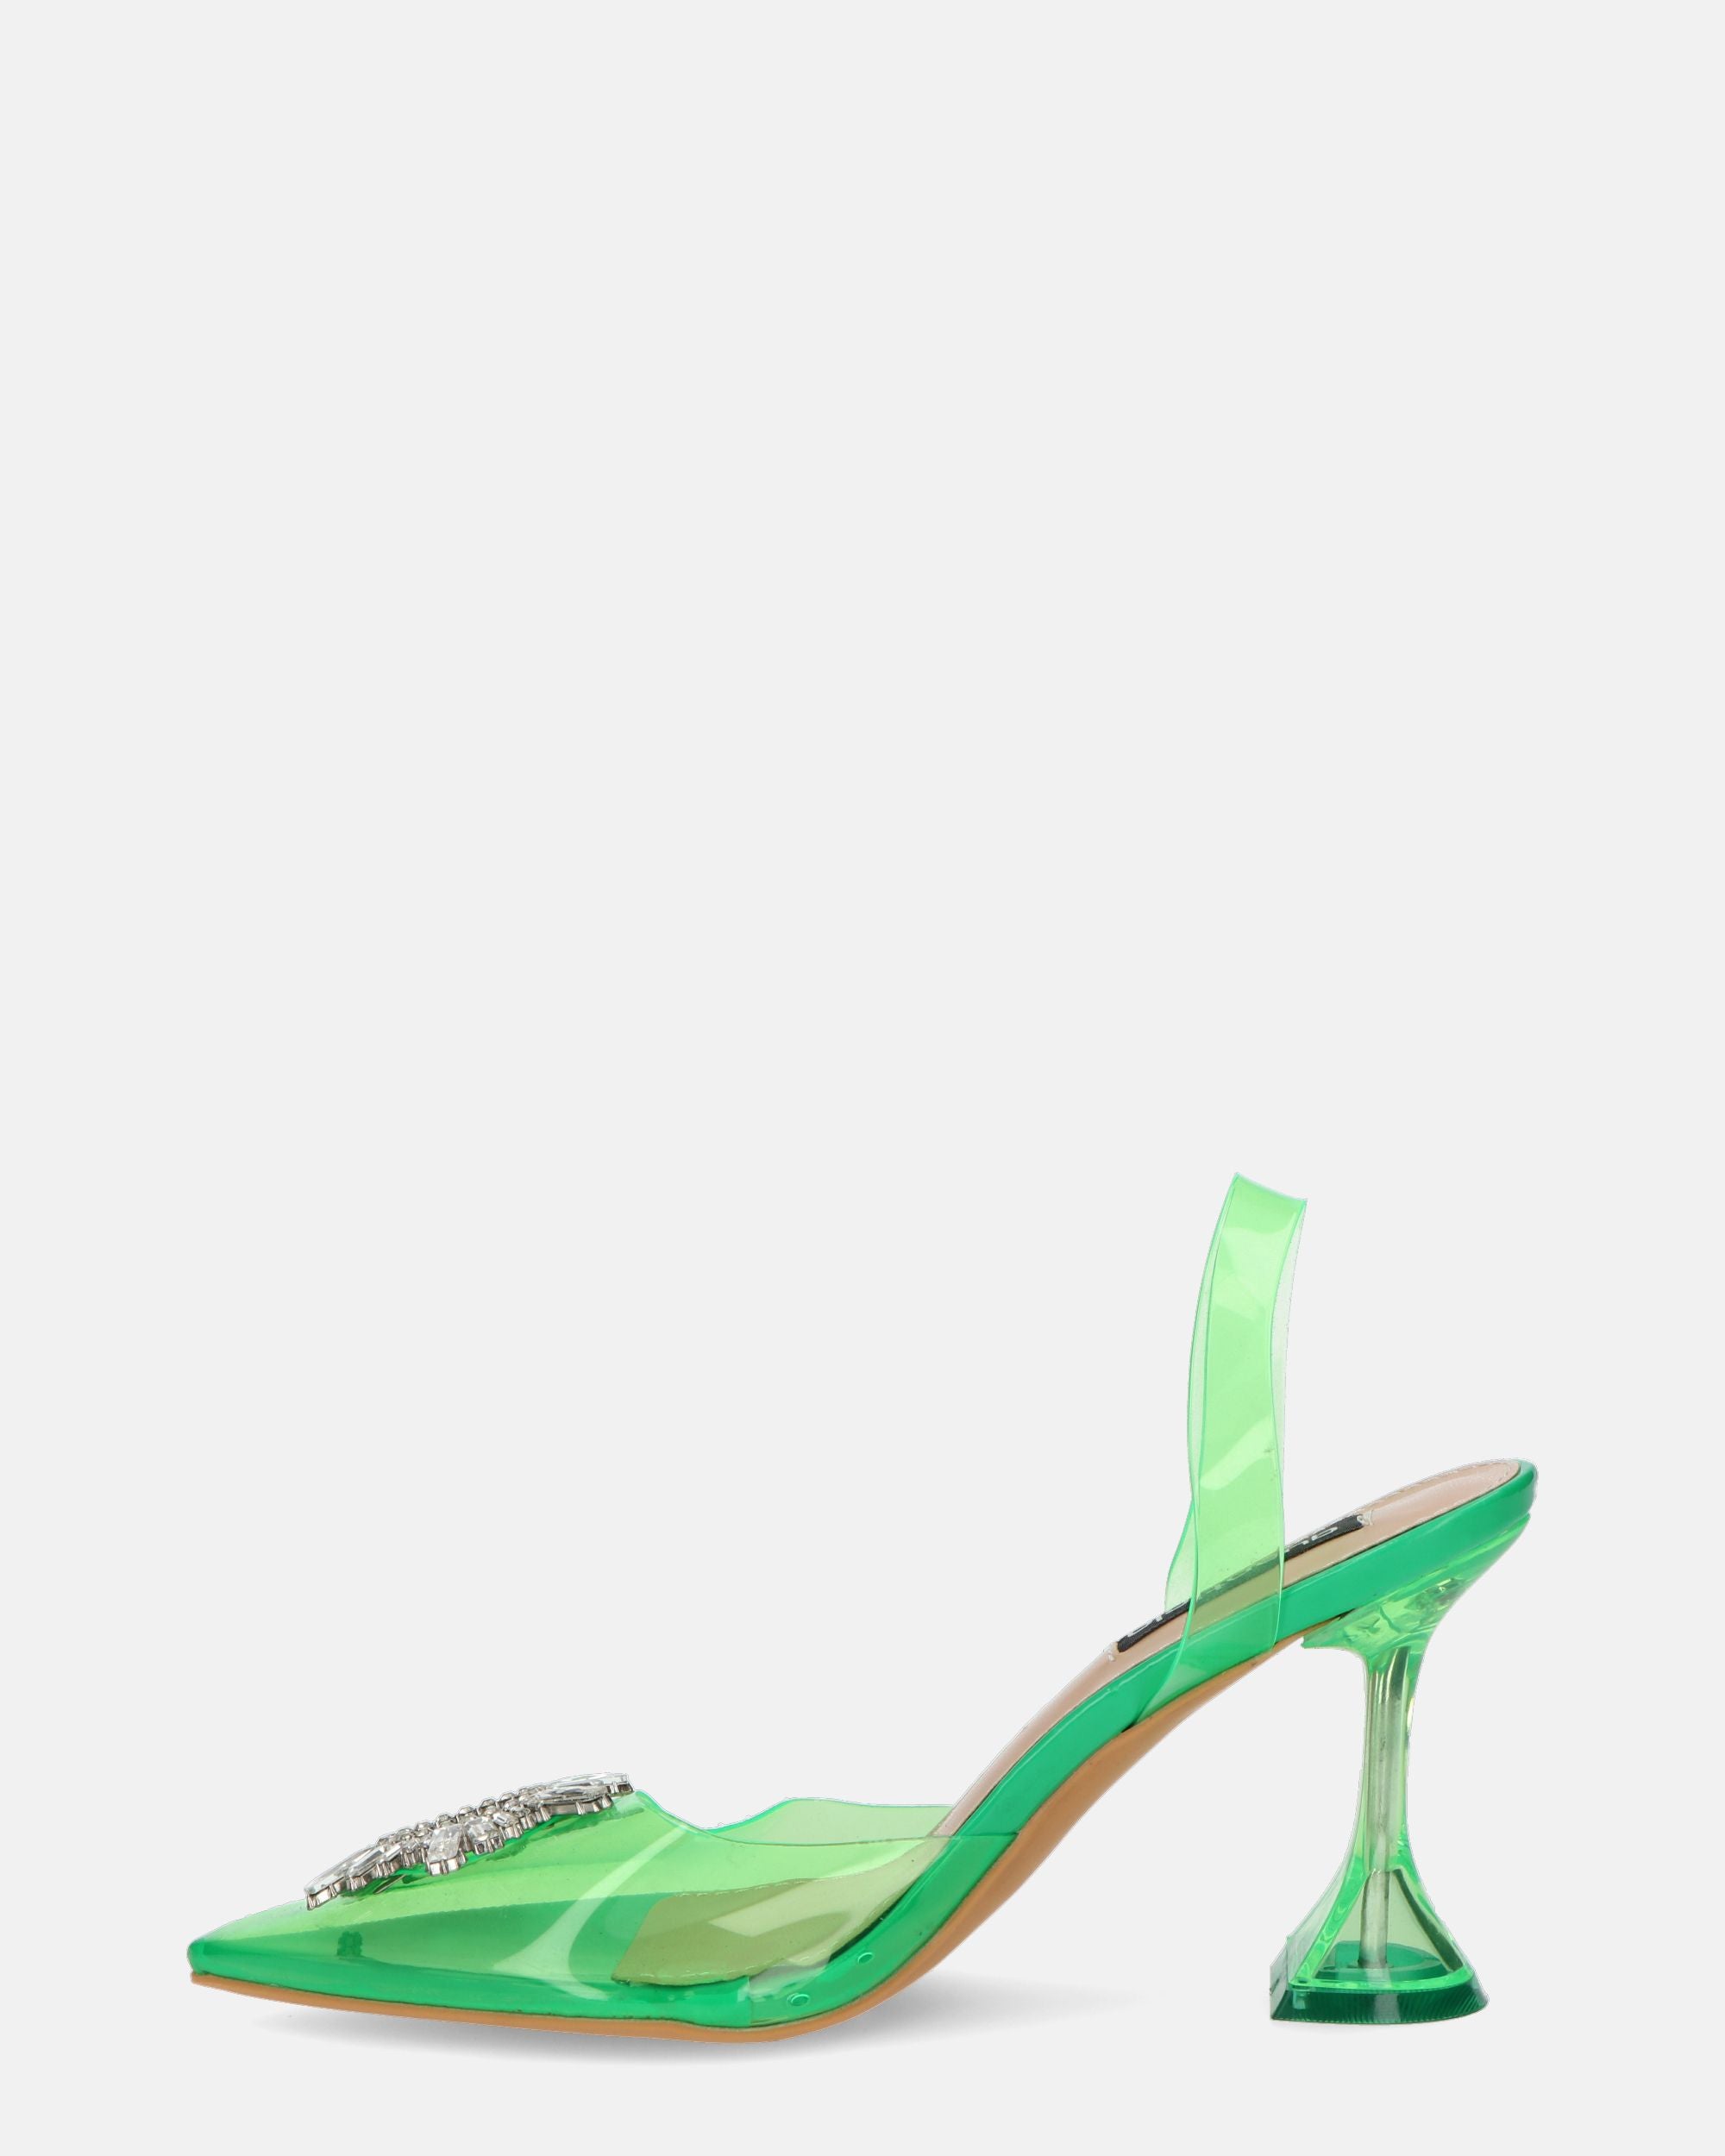 KENAN - chaussures en plexiglas vert avec décoration